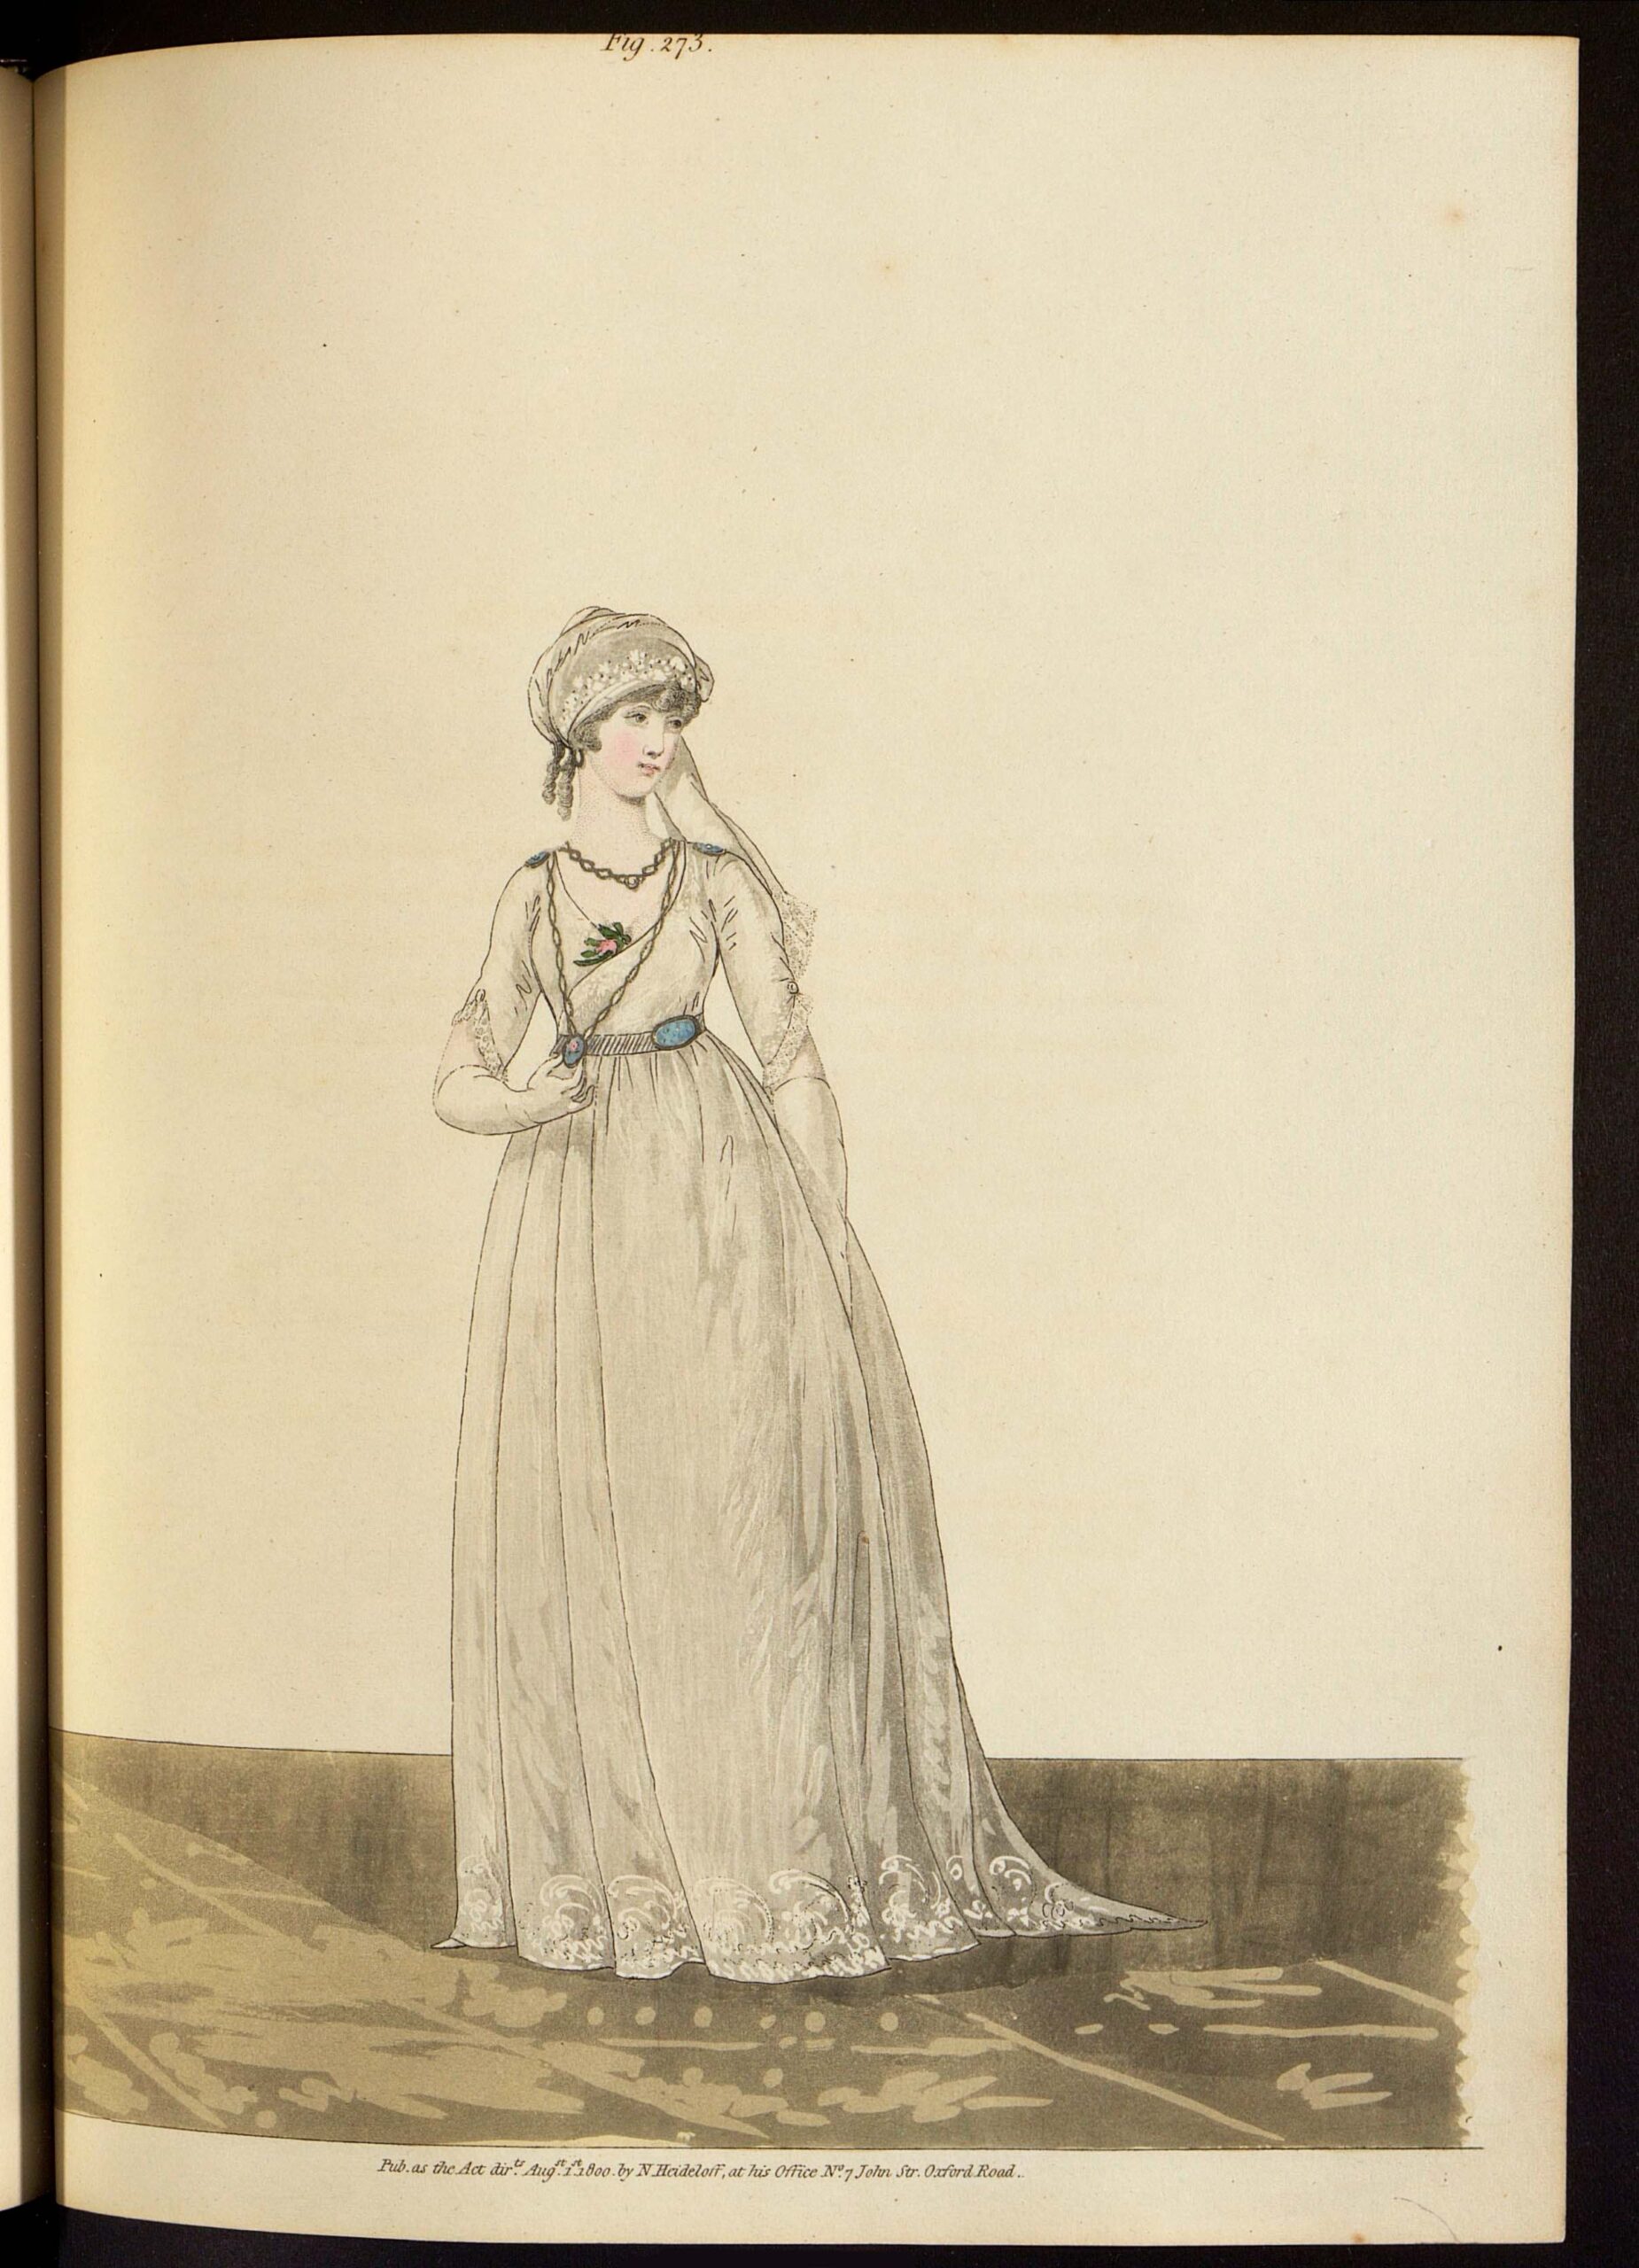 Дневное платье. Лист из журнала «Gallery of fashion» Великобритания, 1800 г.